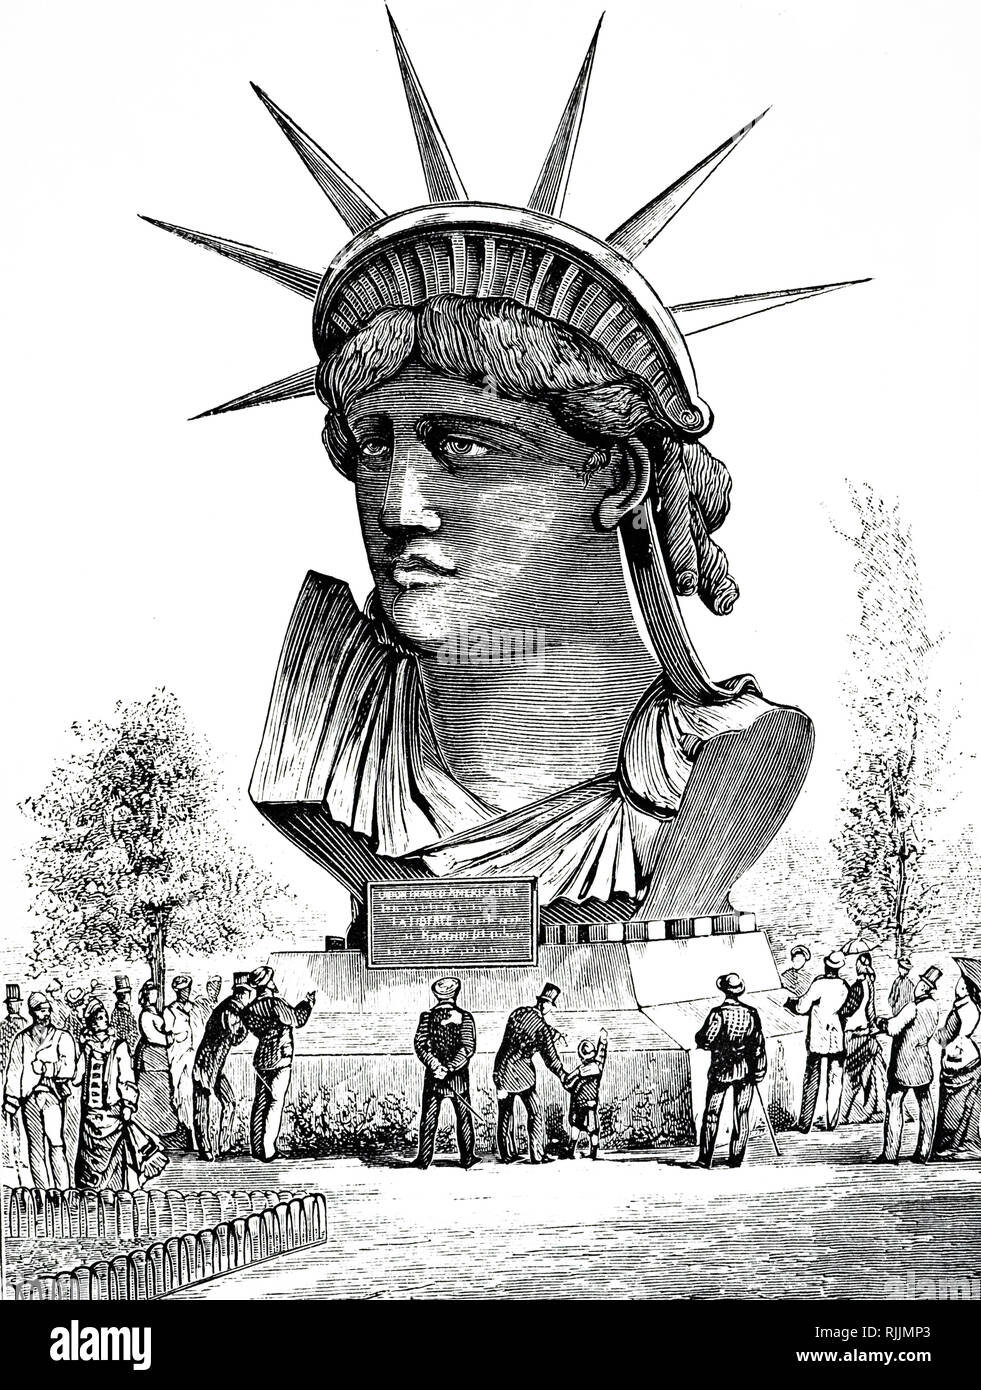 Incisione raffigurante la testa della statua della libertà in Francia, progettato da scultore francese Frederic Auguste Bartholdi. La statua è stata dedicata all'America il 28 ottobre 1886. Datata del XIX secolo Foto Stock